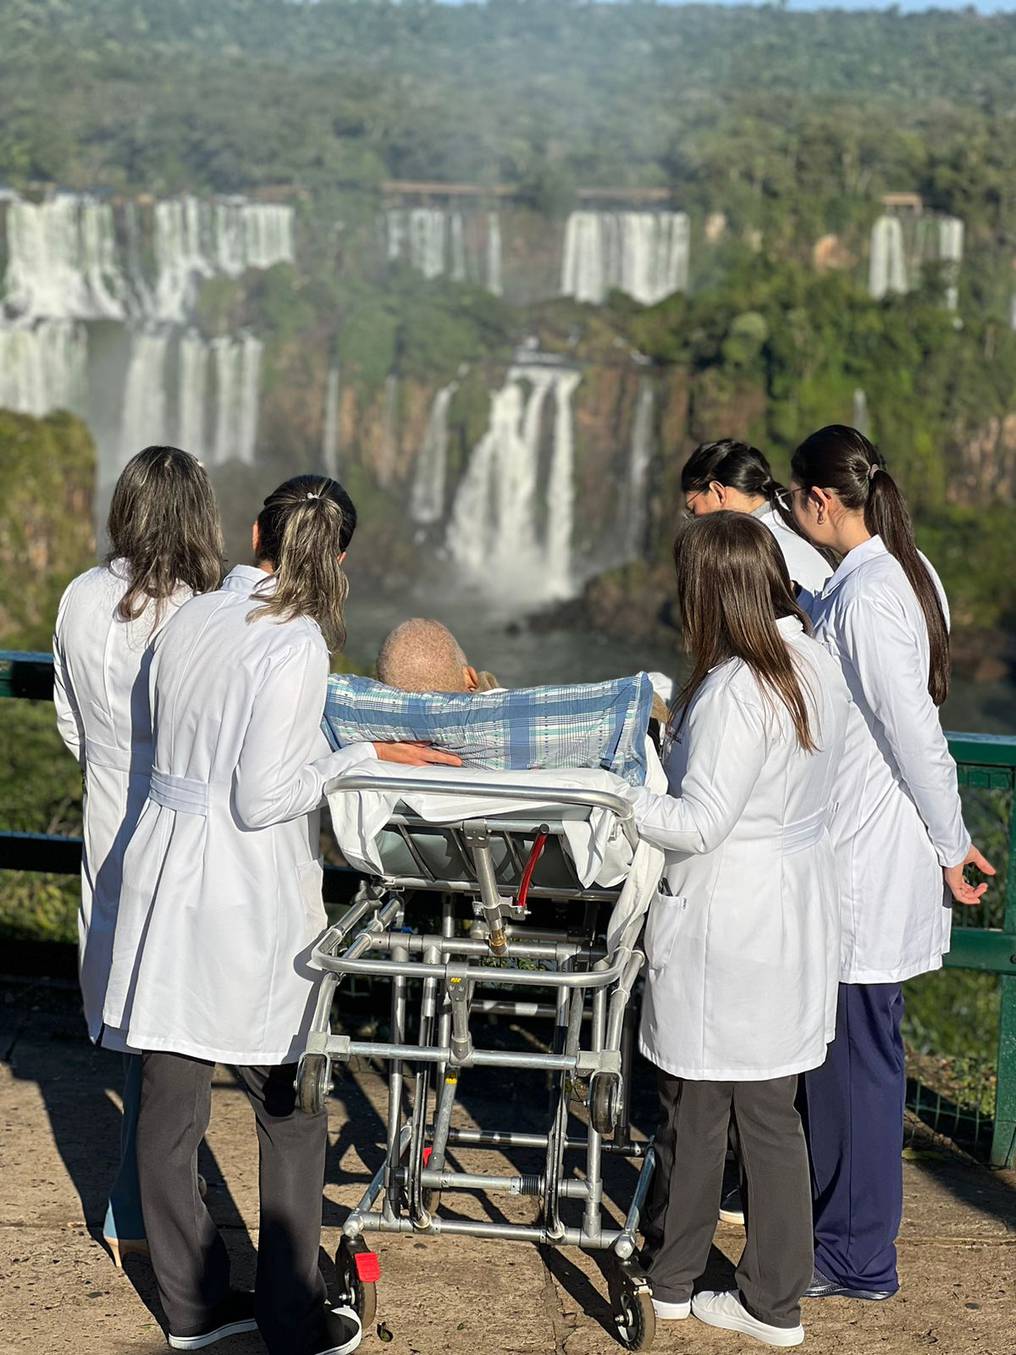 Valmiro Aparecido da Silva, de 54 años, un paciente oncológico, cumple su sueño de ver por primera vez las cataratas de Iguazú, mediante el apoyo del personal médico del Hospital Costa Cavalcanti de Foz de Iguazú y la concesionaria de las cataratas. Foto: Gentileza